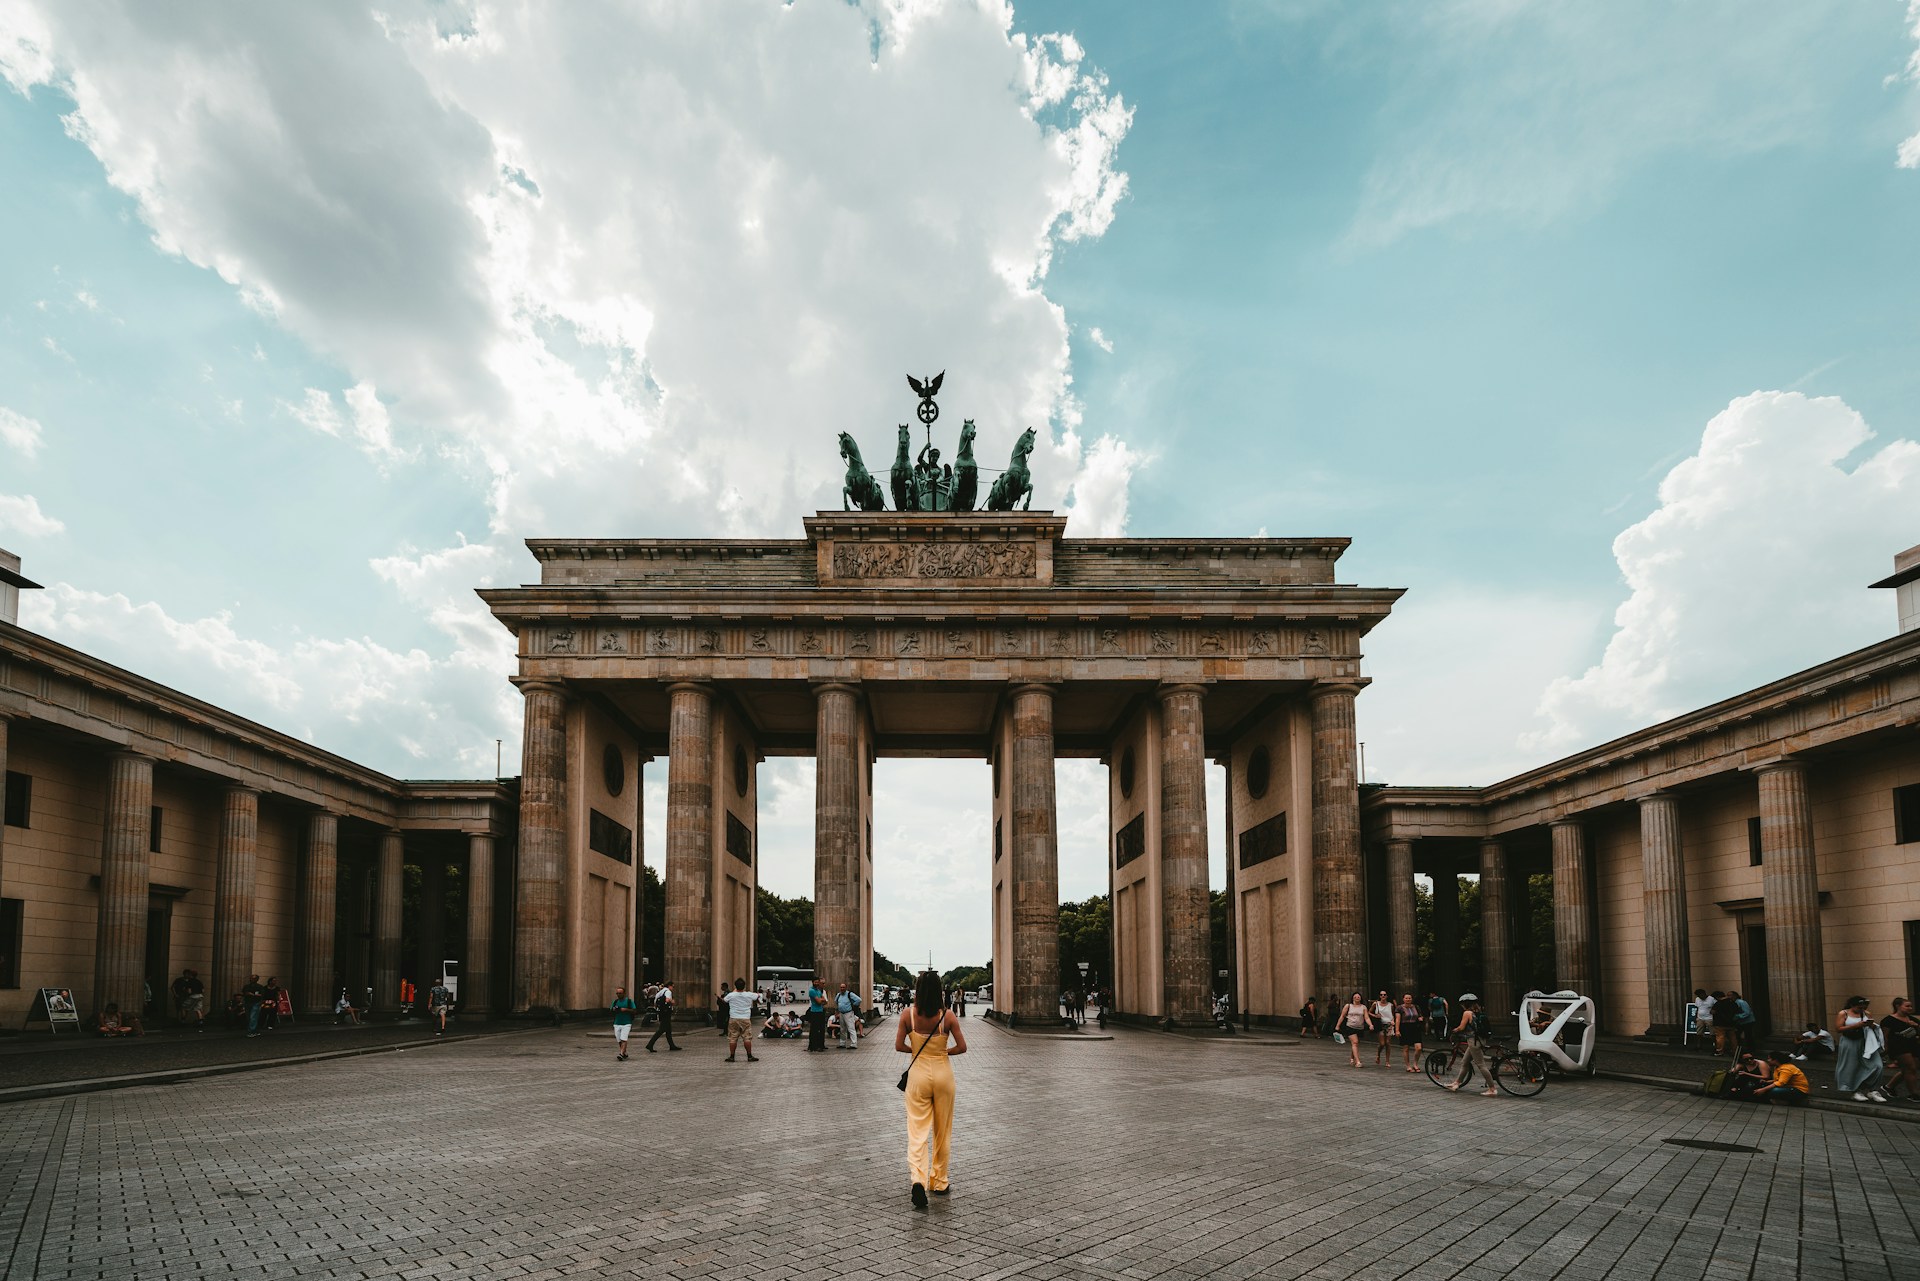 Plan zwiedzania Berlina - co zobaczyć i gdzie się zatrzymać